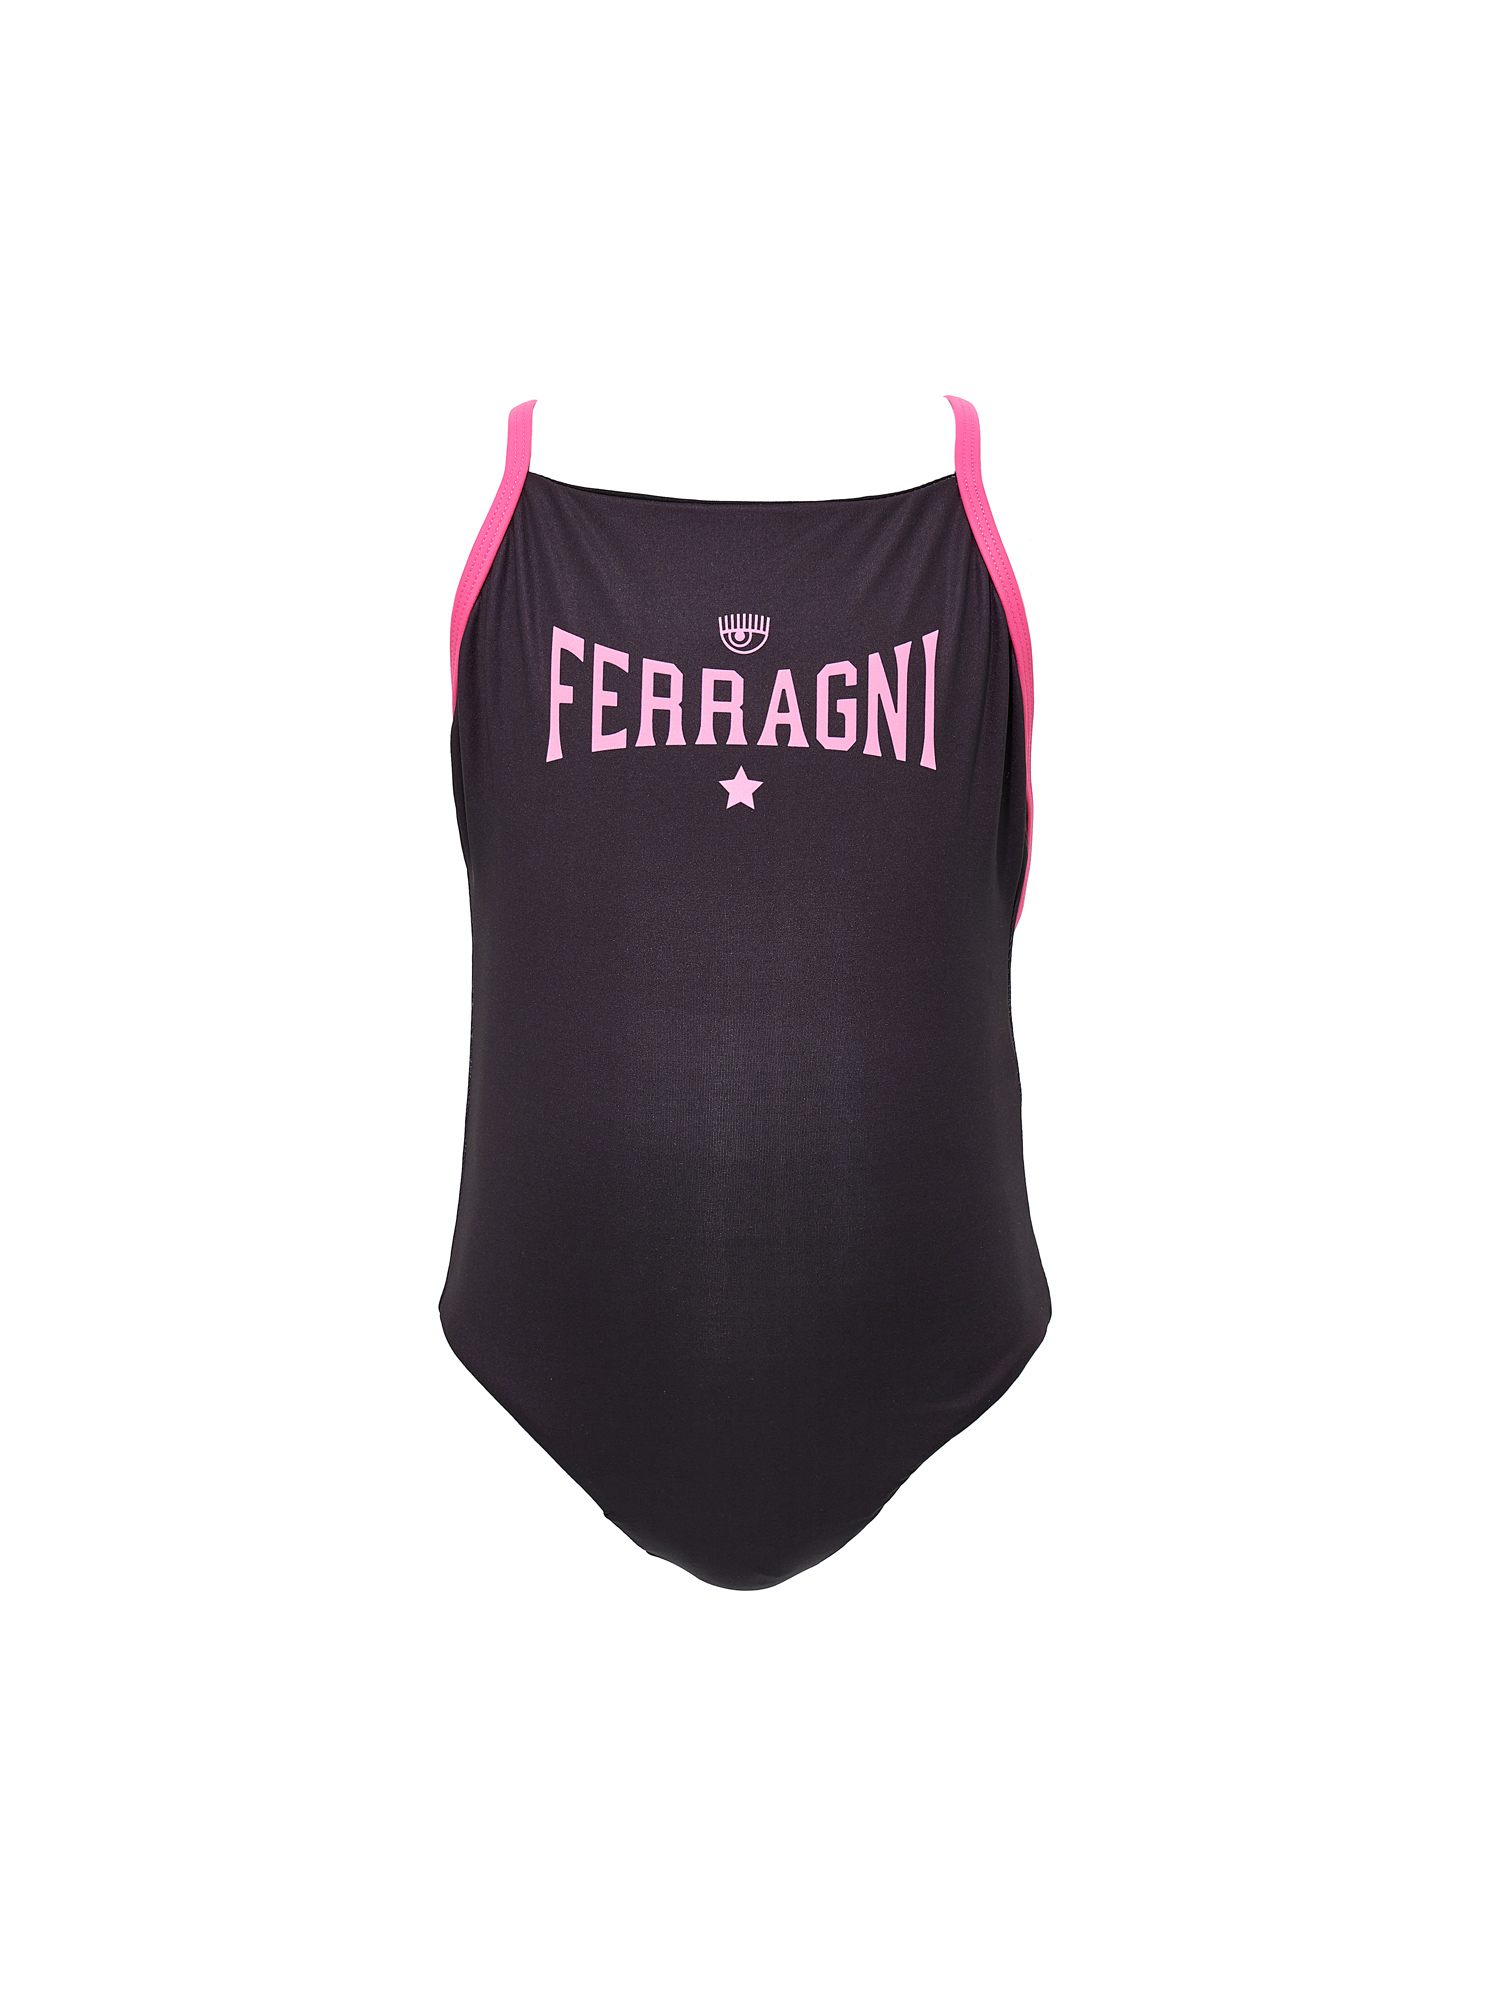 Chiara Ferragni Kids'   Cf Ferragni Stretch One-piece Swimsuit In Black